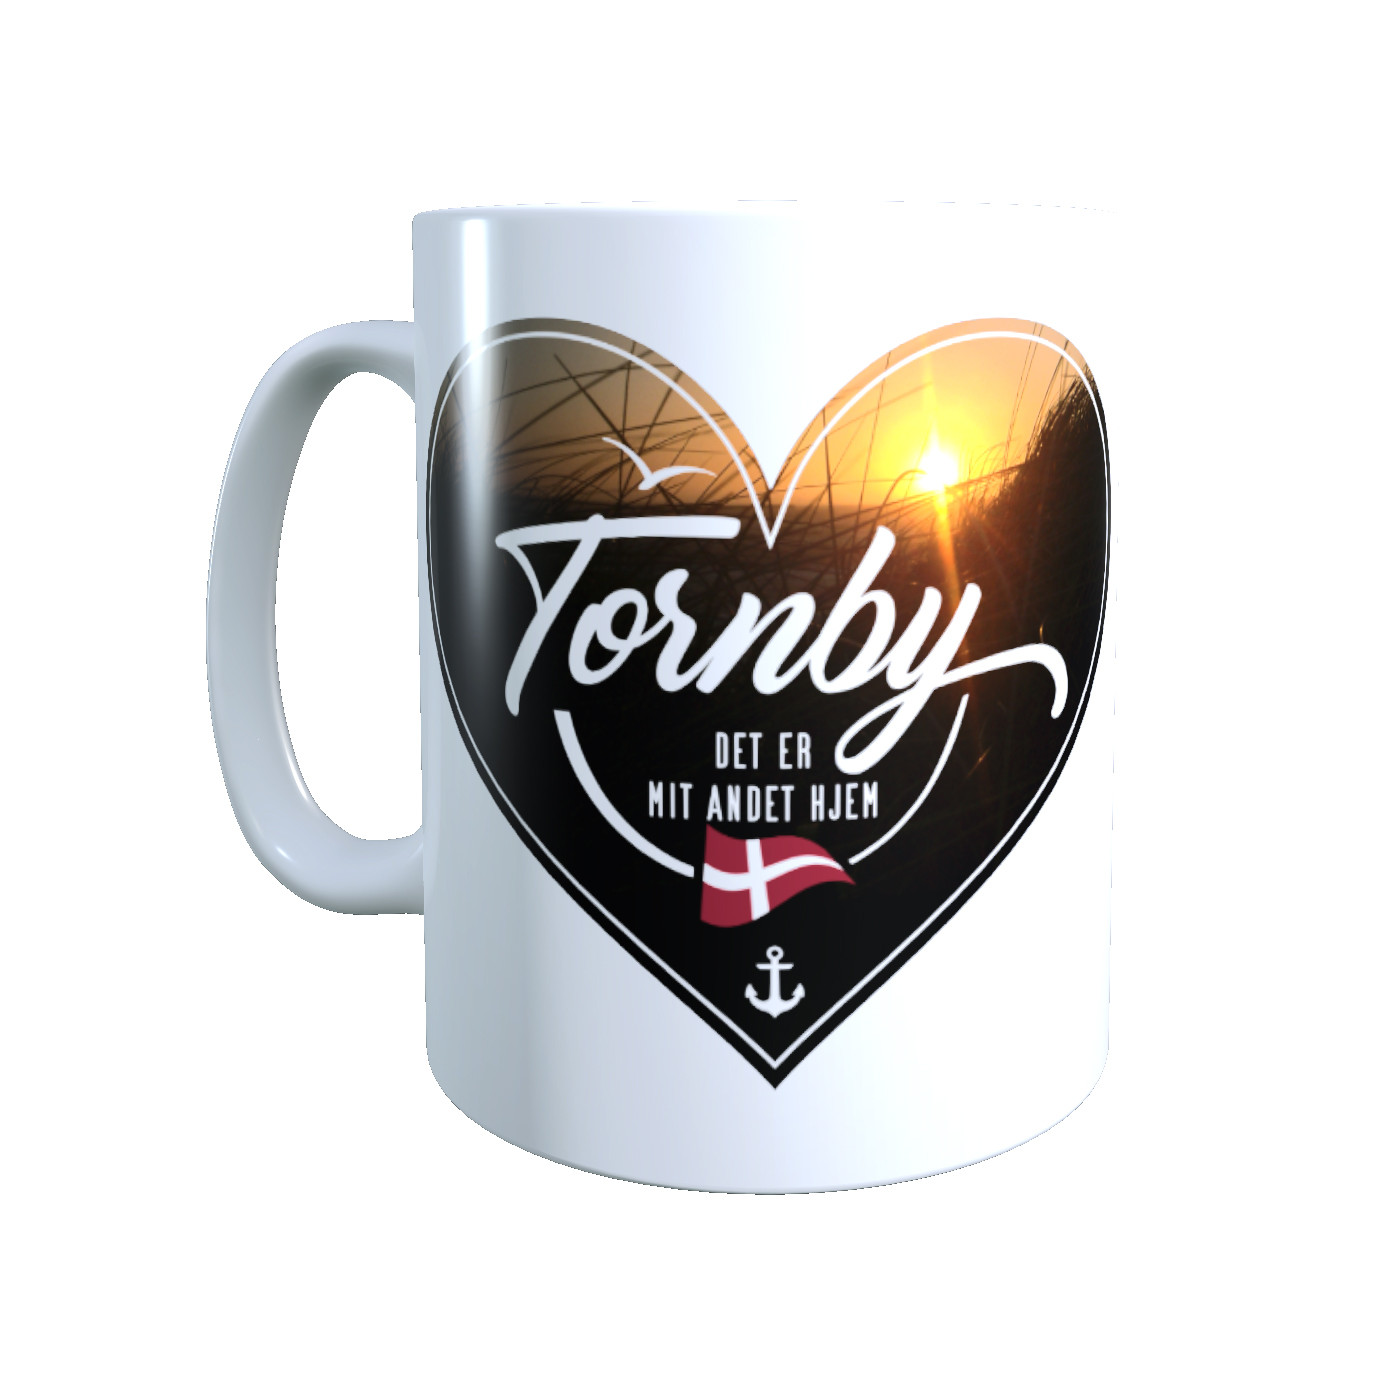 Dänemark - Meine zweite Heimat - Tasse "Tornby" Herzmotiv